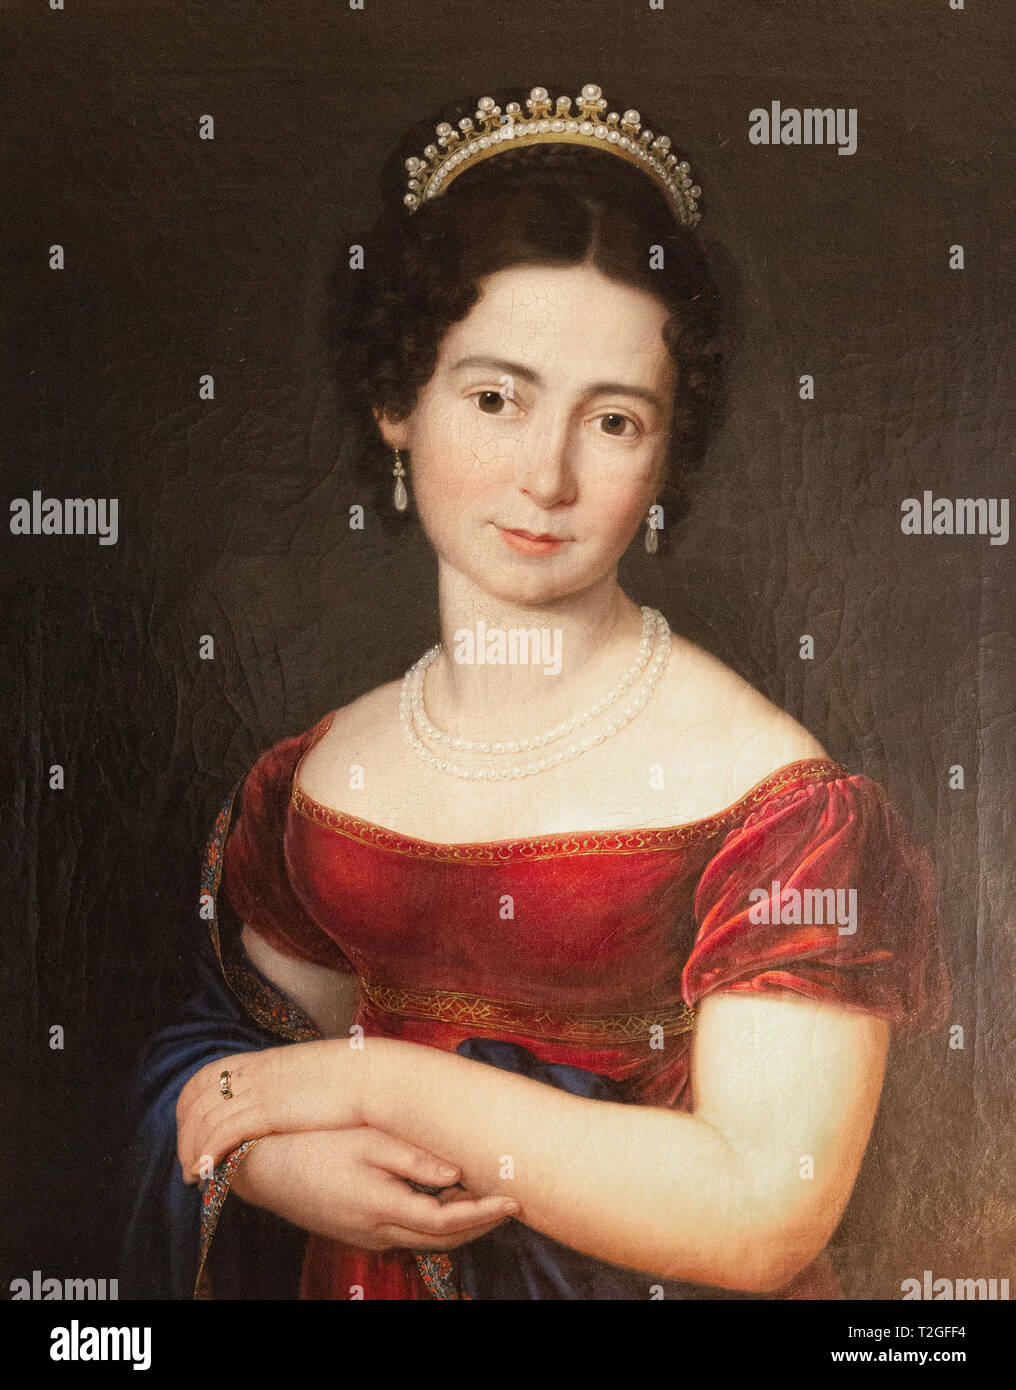 Pintura de Victoria de Sajonia-Coburgo-Saalfeld, madre de la reina Victoria; en el Museo de vidrio y cristal, Málaga, España Foto de stock